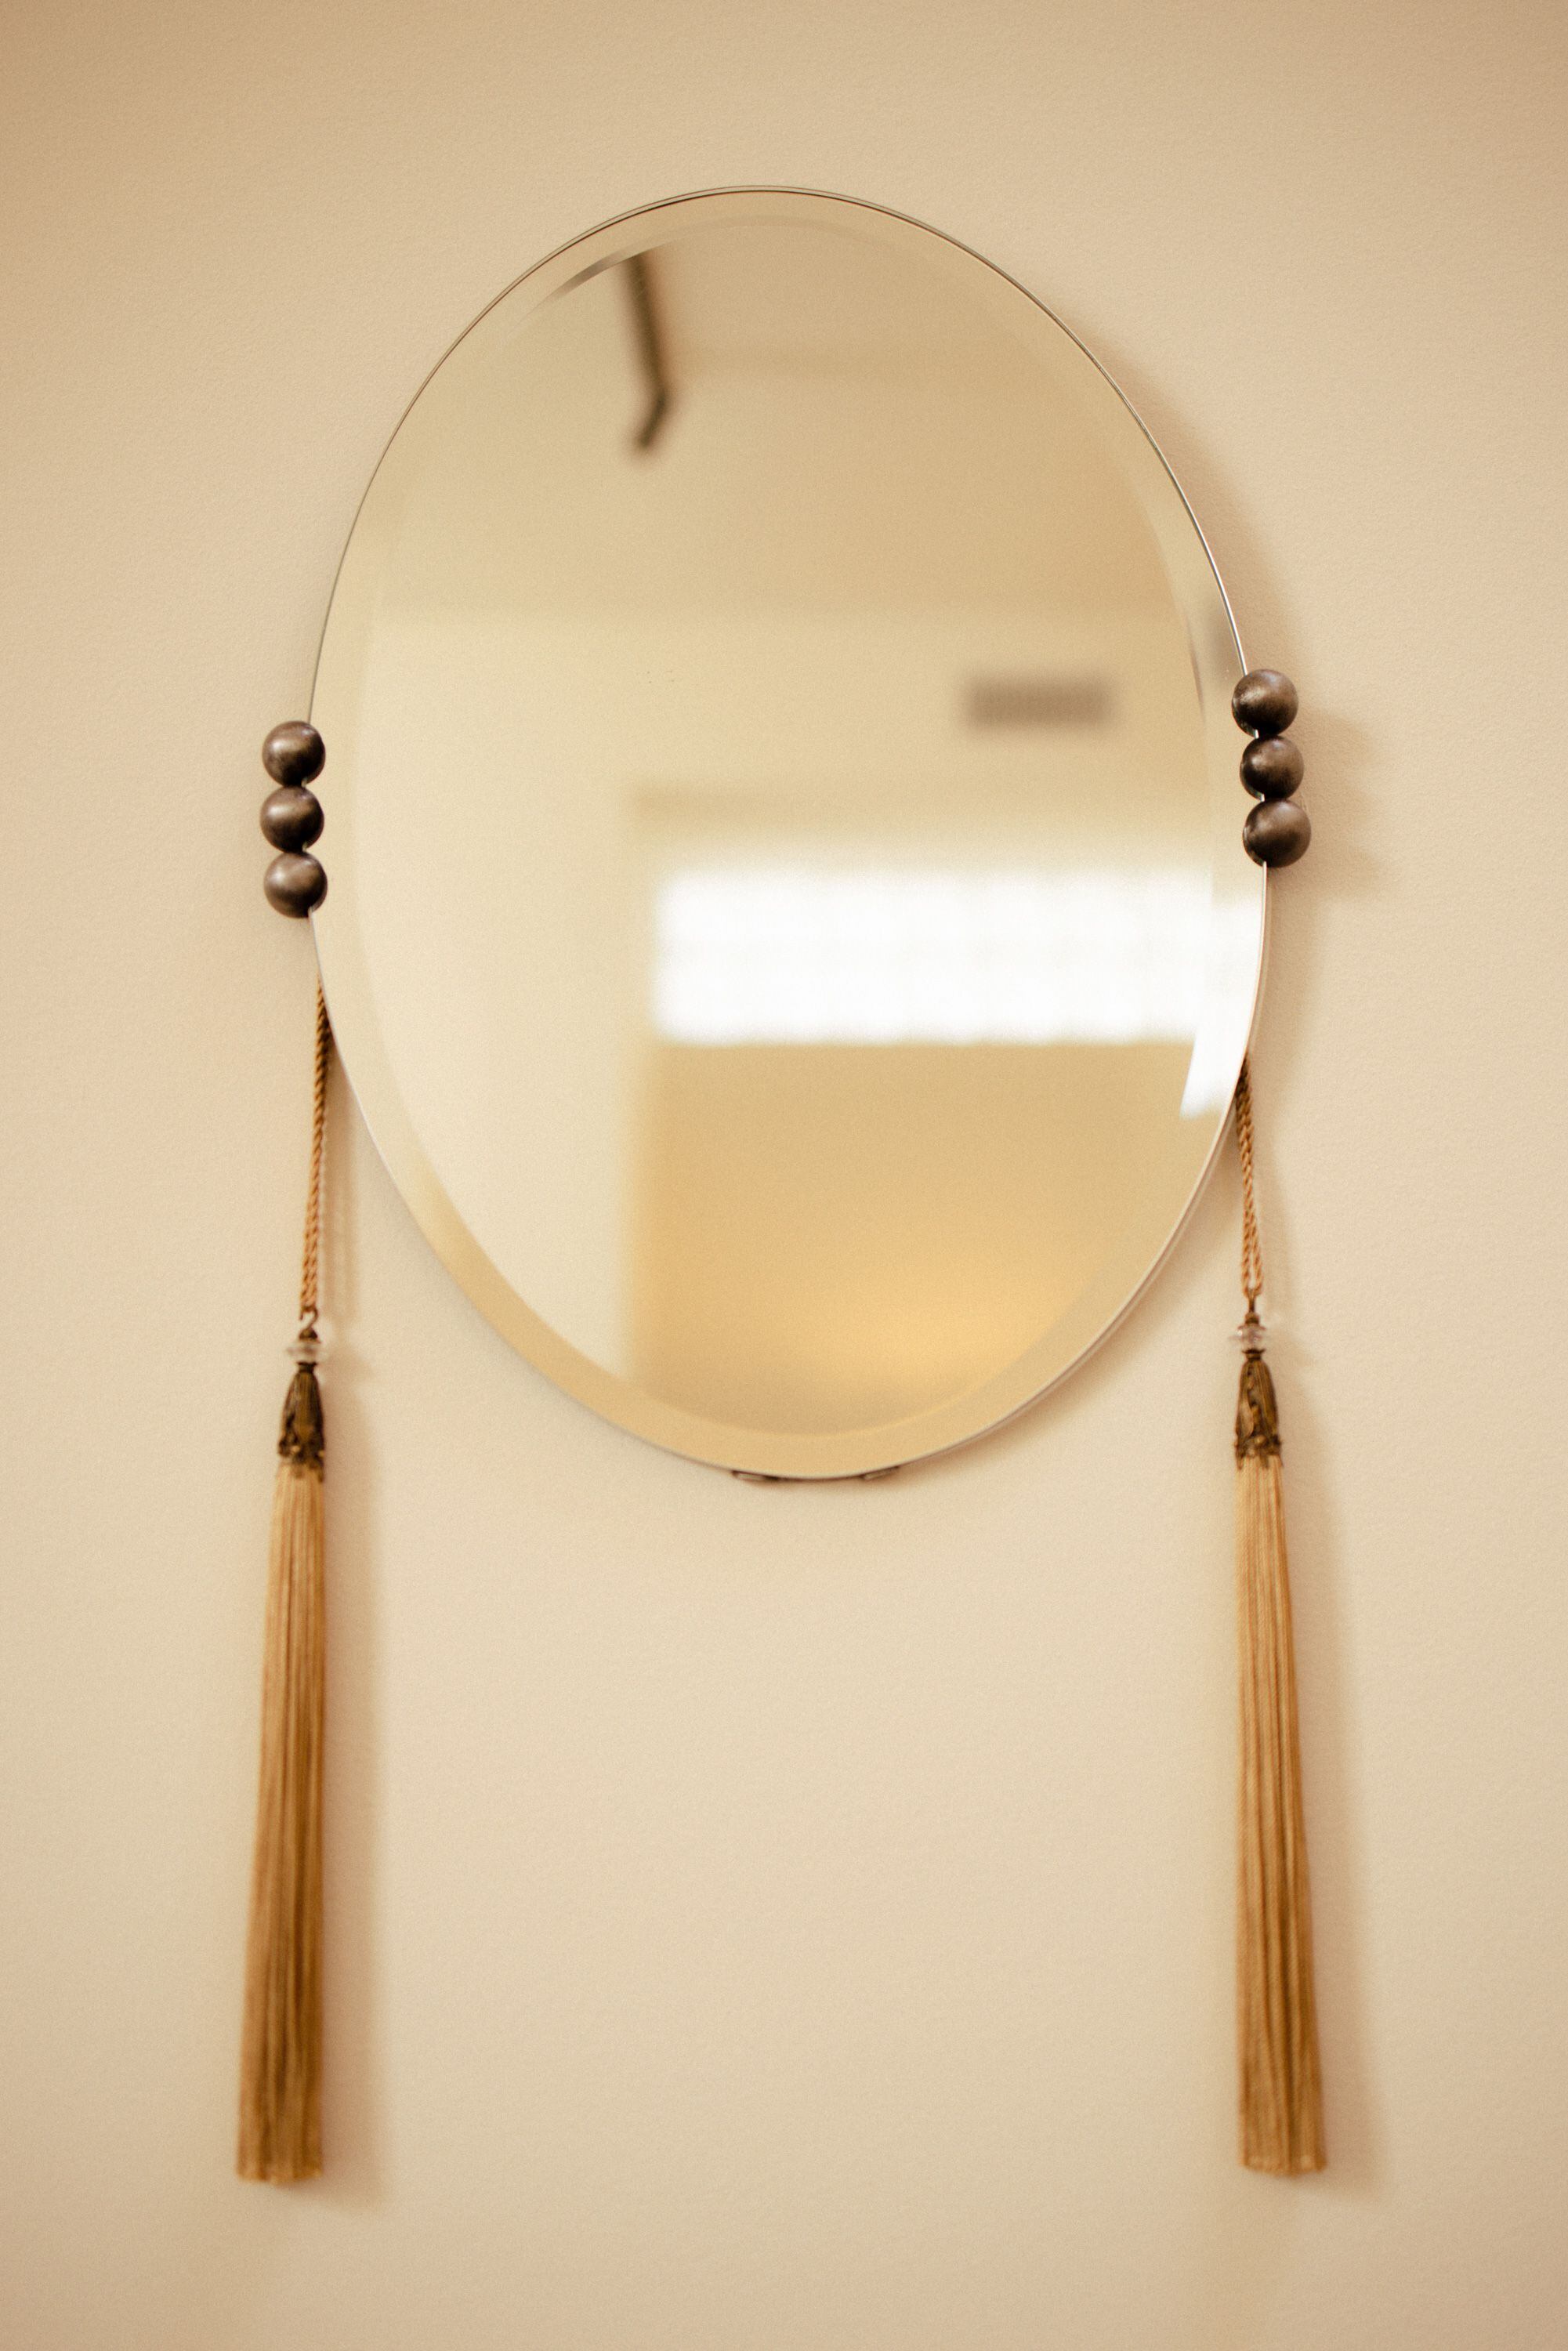 El espejo es de Gabriela Rosales para GAD Art and Fabrication con borlas de Fortuny Venezia.